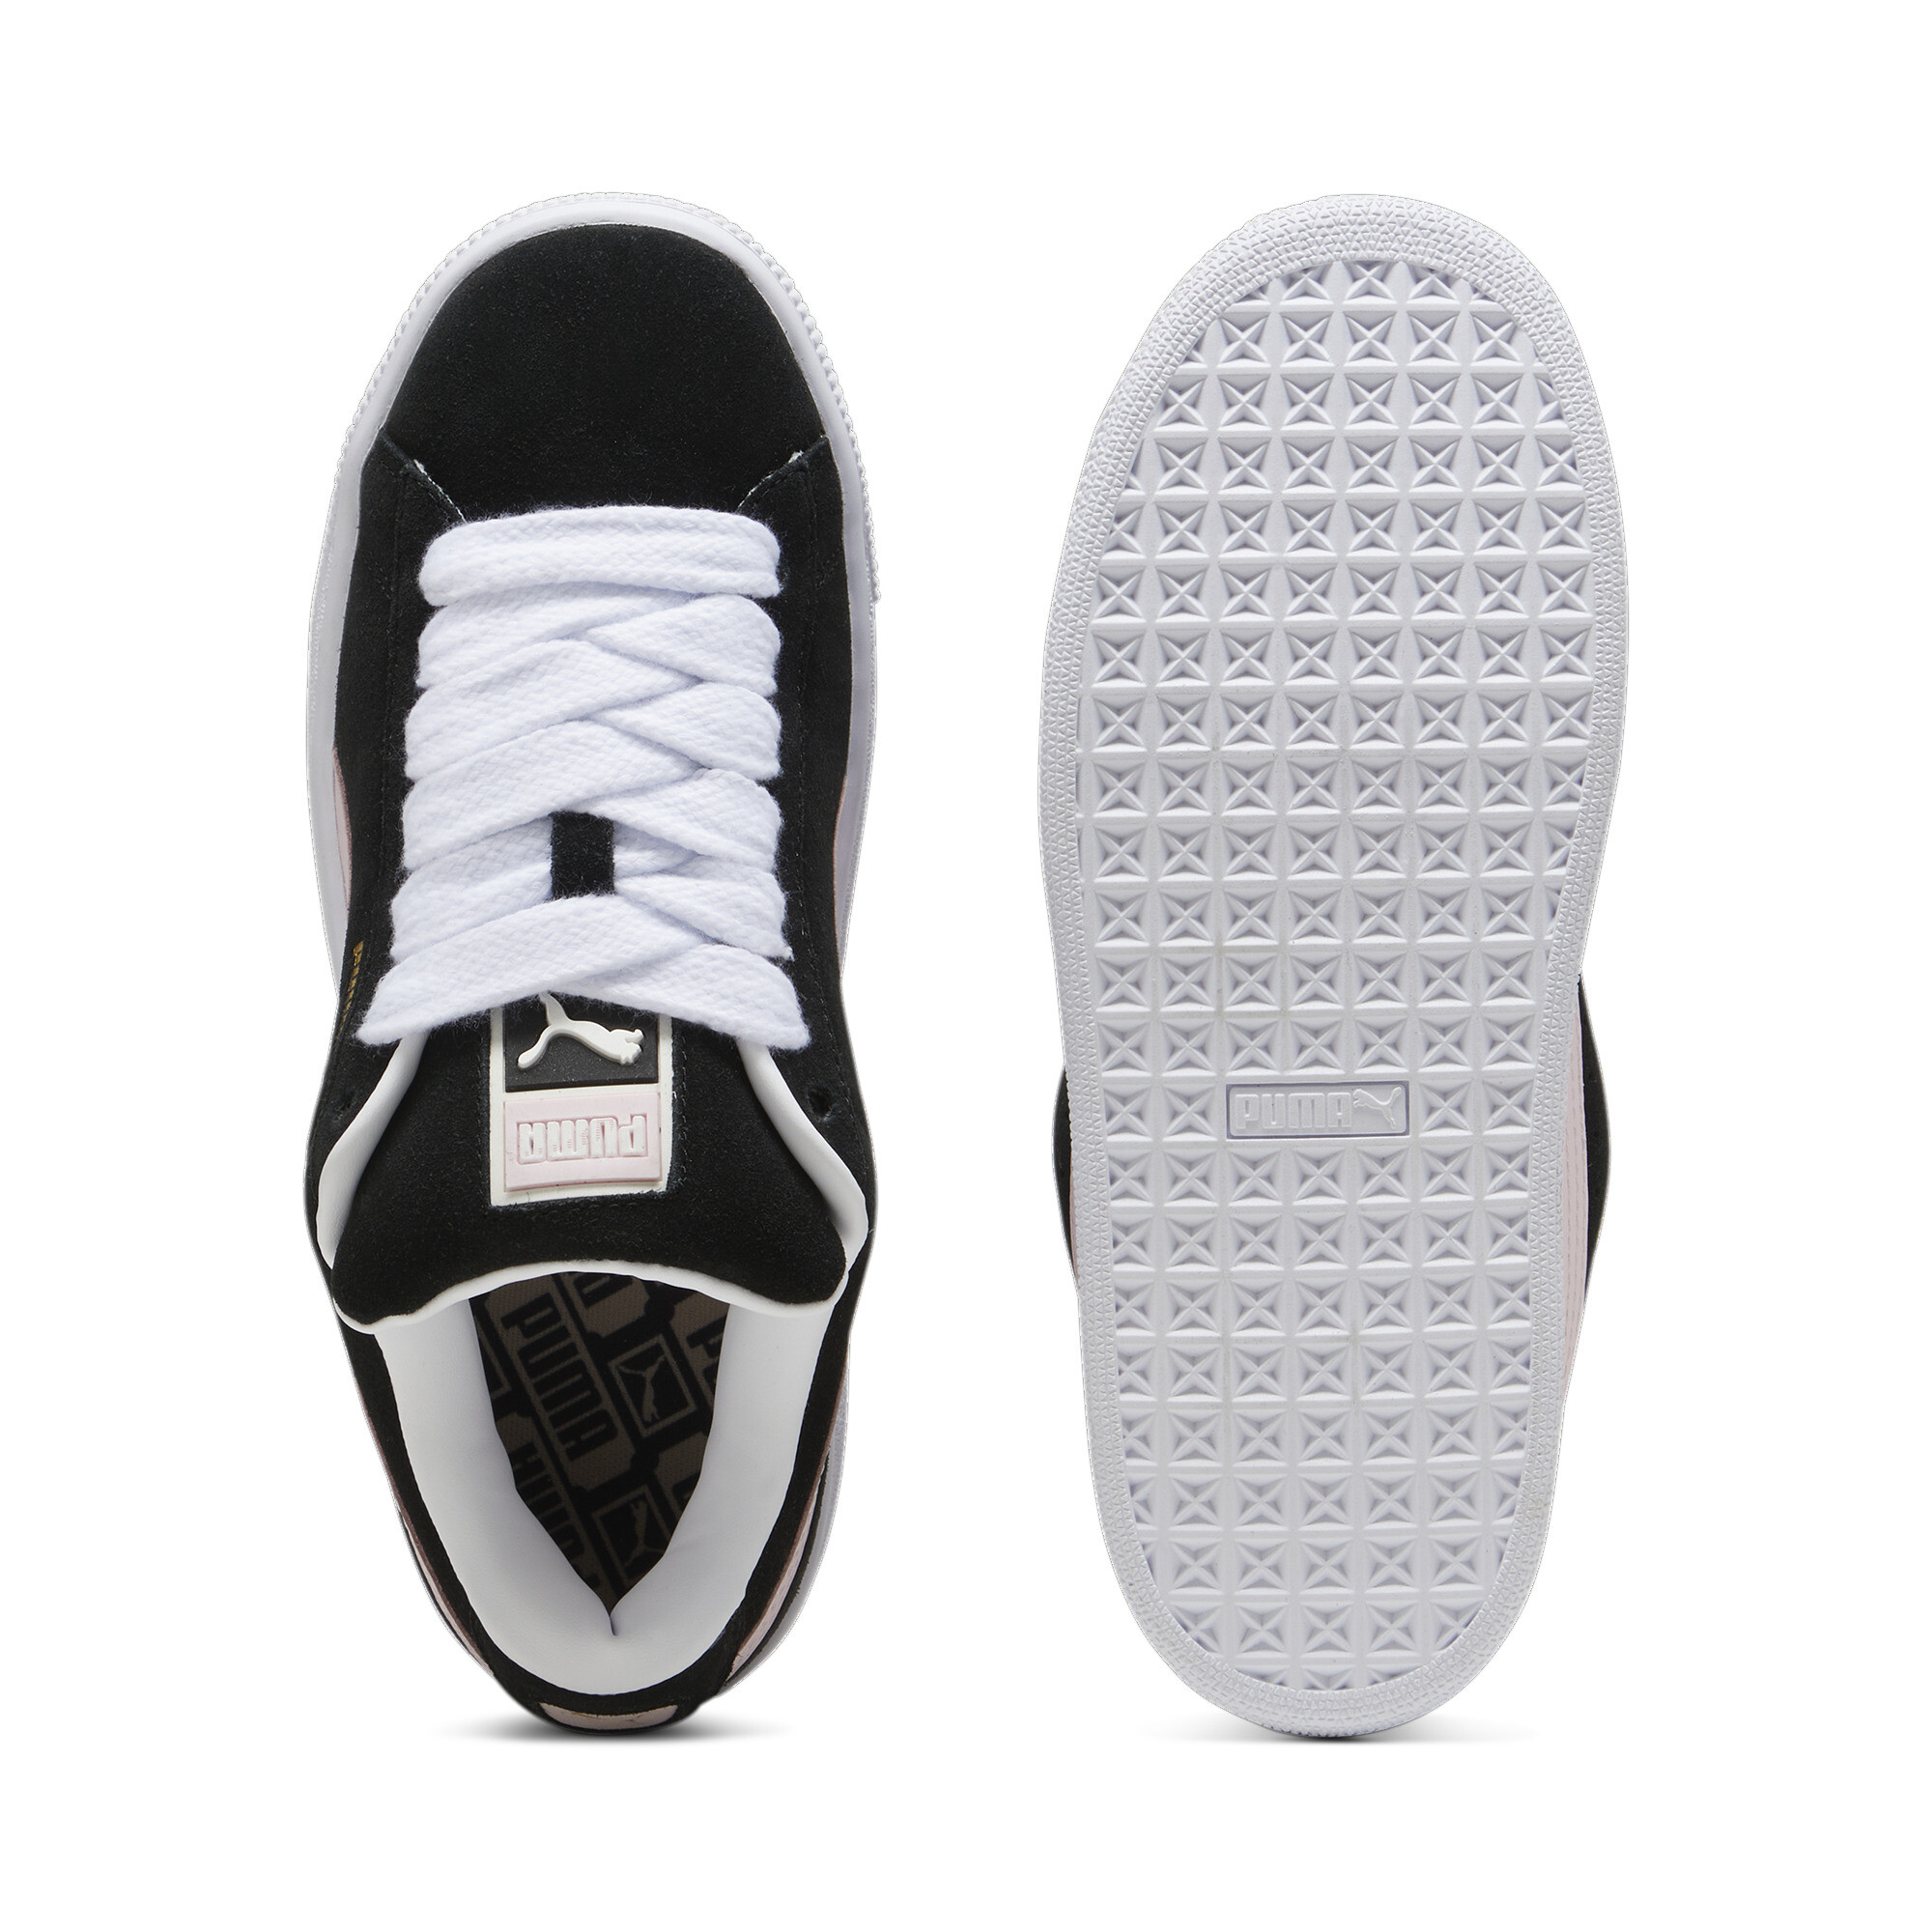 Puma Suede XL Sneakers Unisex, Black, Size 44.5, Shoes